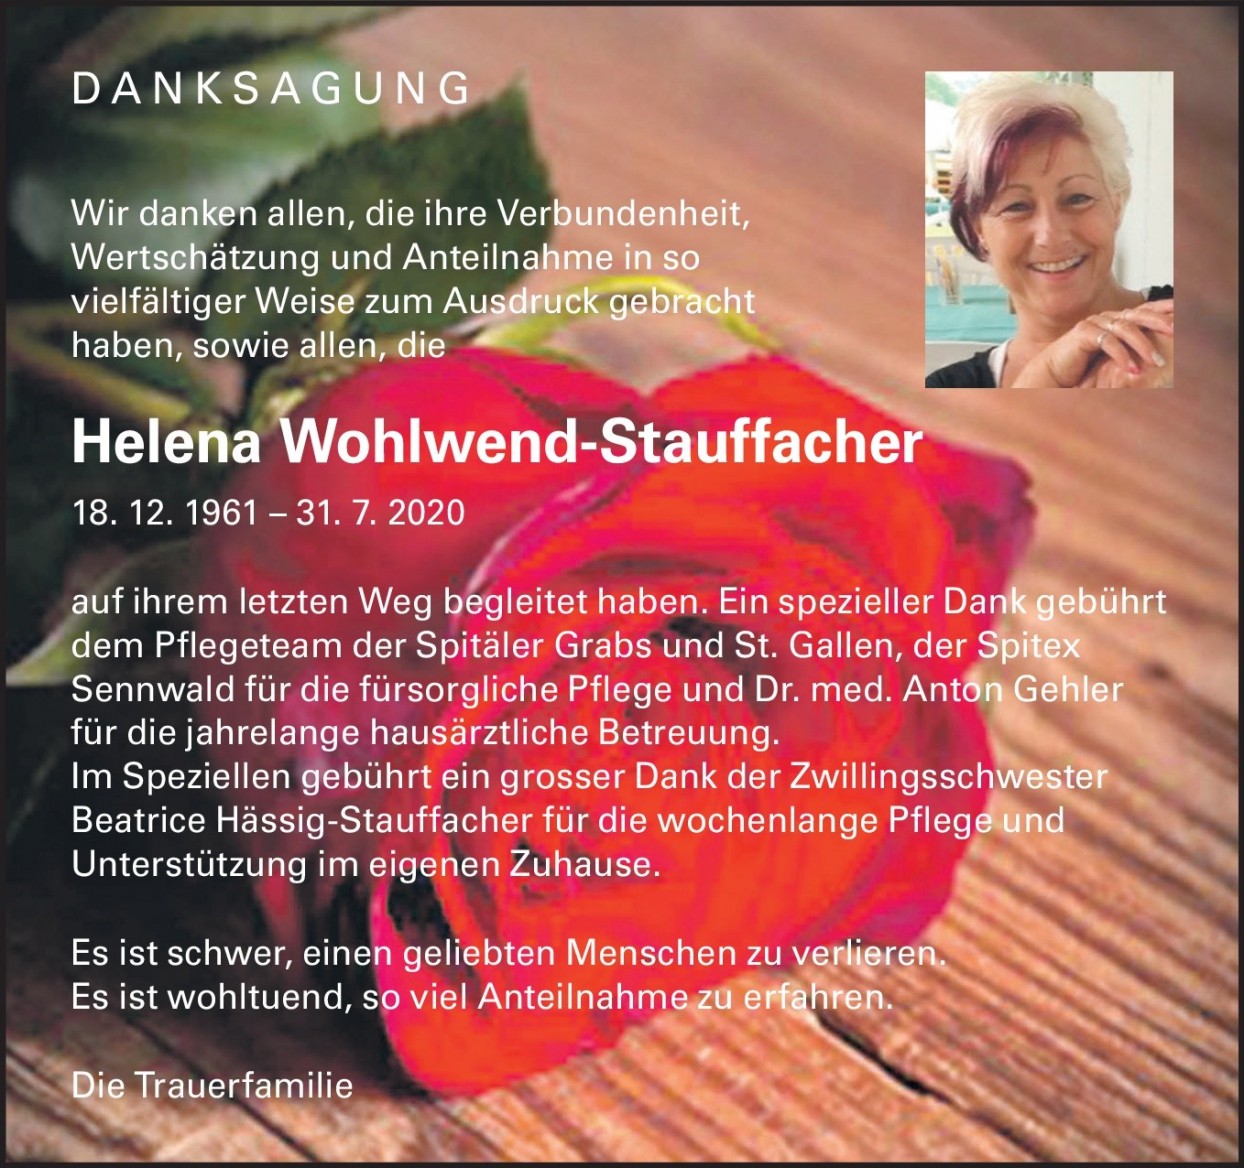 Helena Wohlwend-Stauffacher